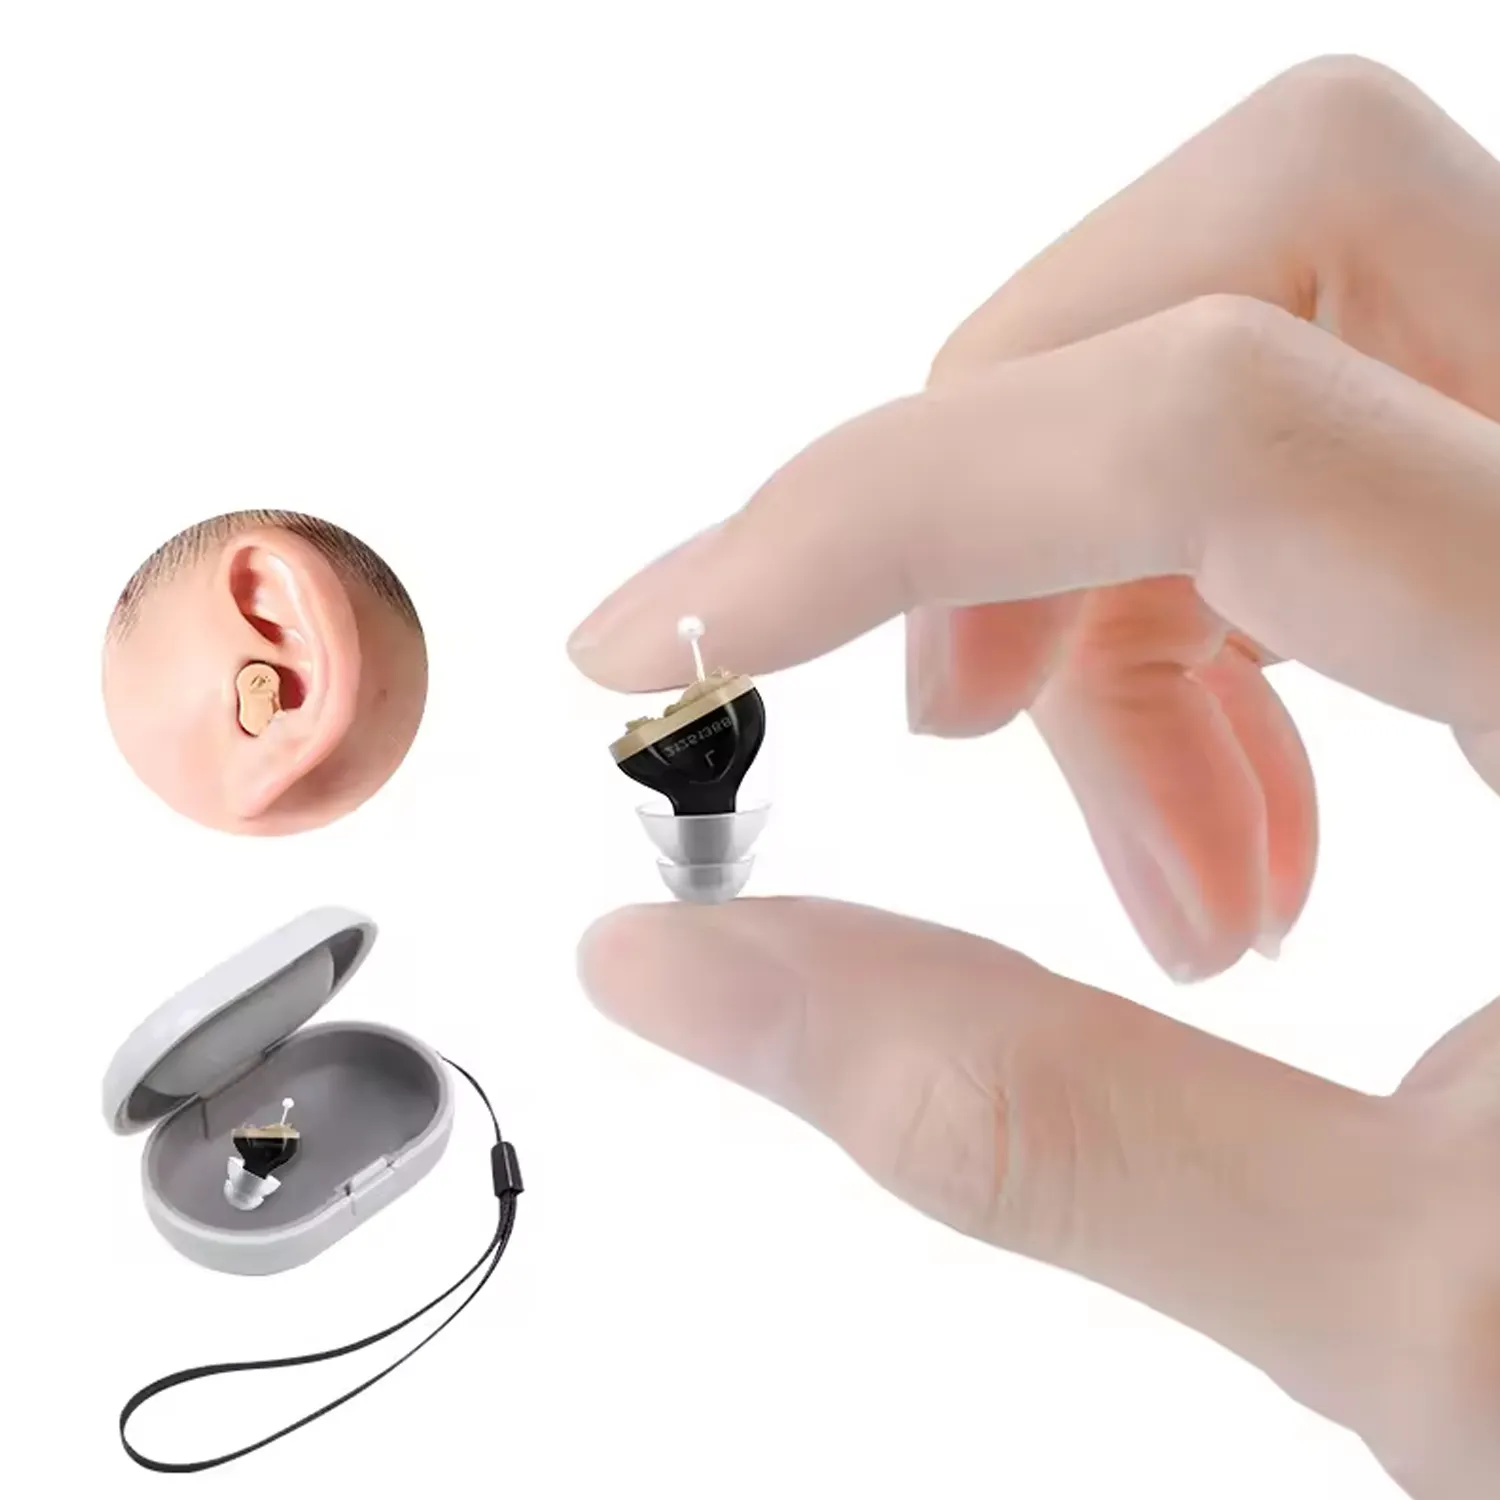 İşitme cihazı fiyat listesi Mini ses amplifikatörü kulak görünmez İşitme cihazları pil yaşlılar için